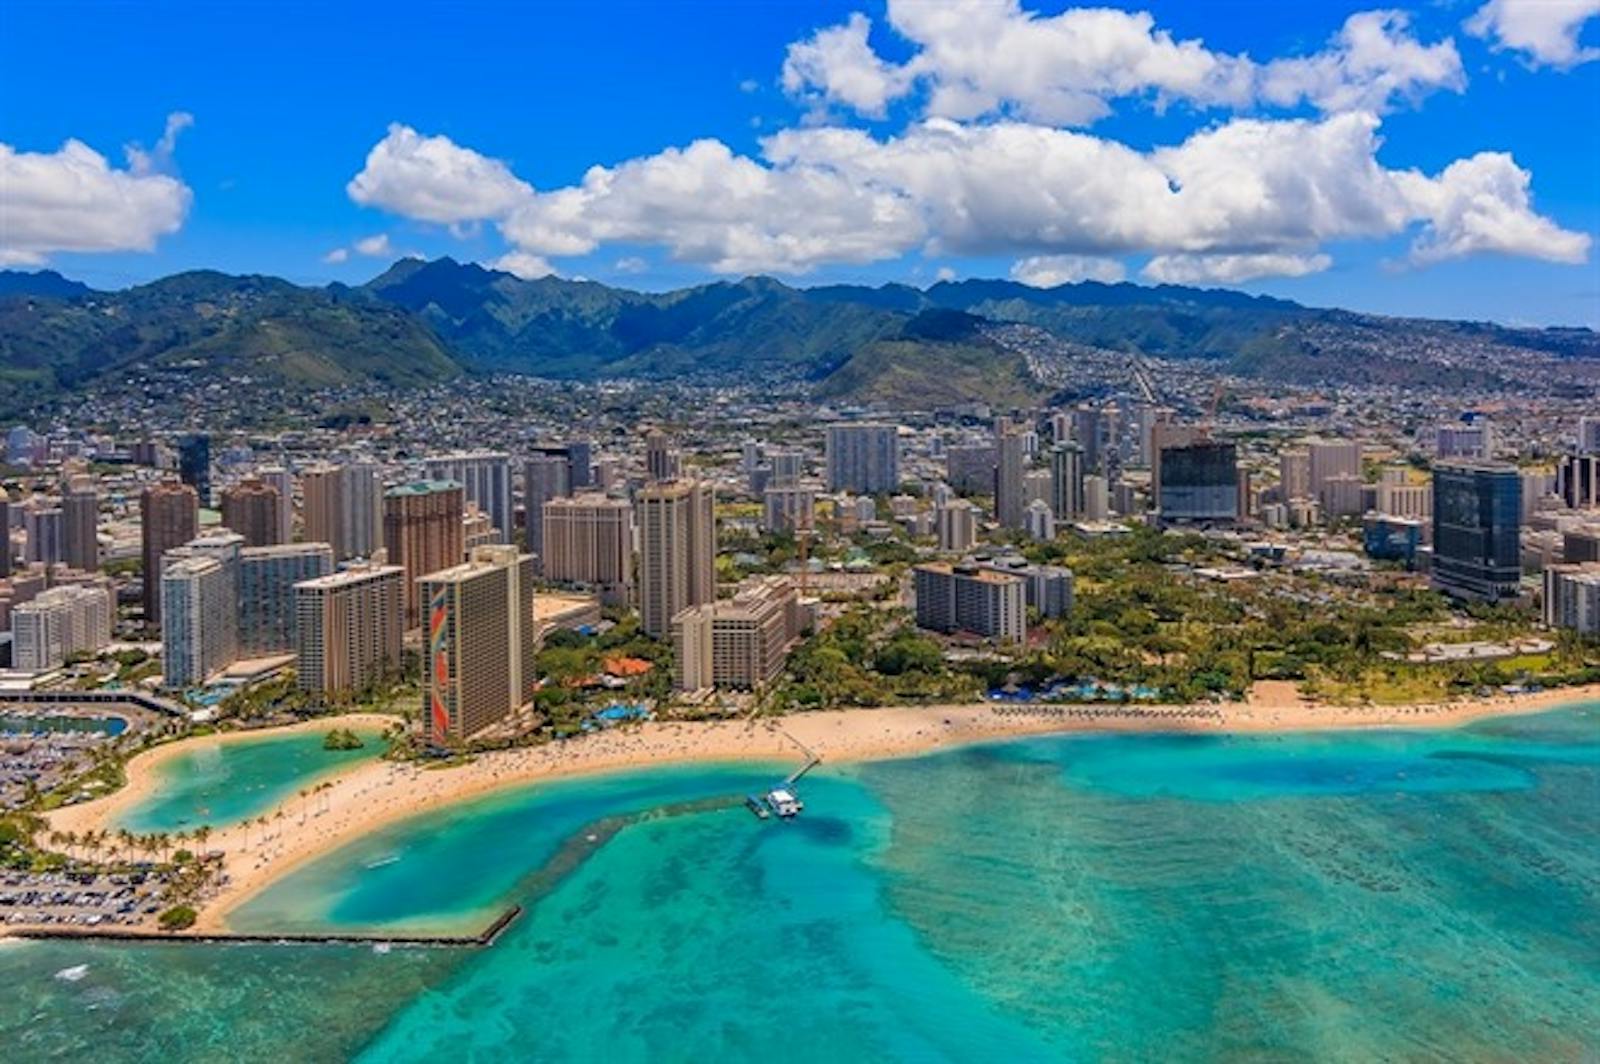 Hawaii Island Hopping Tour|Oahu, Kauai, Maui, The Big Island | ITC